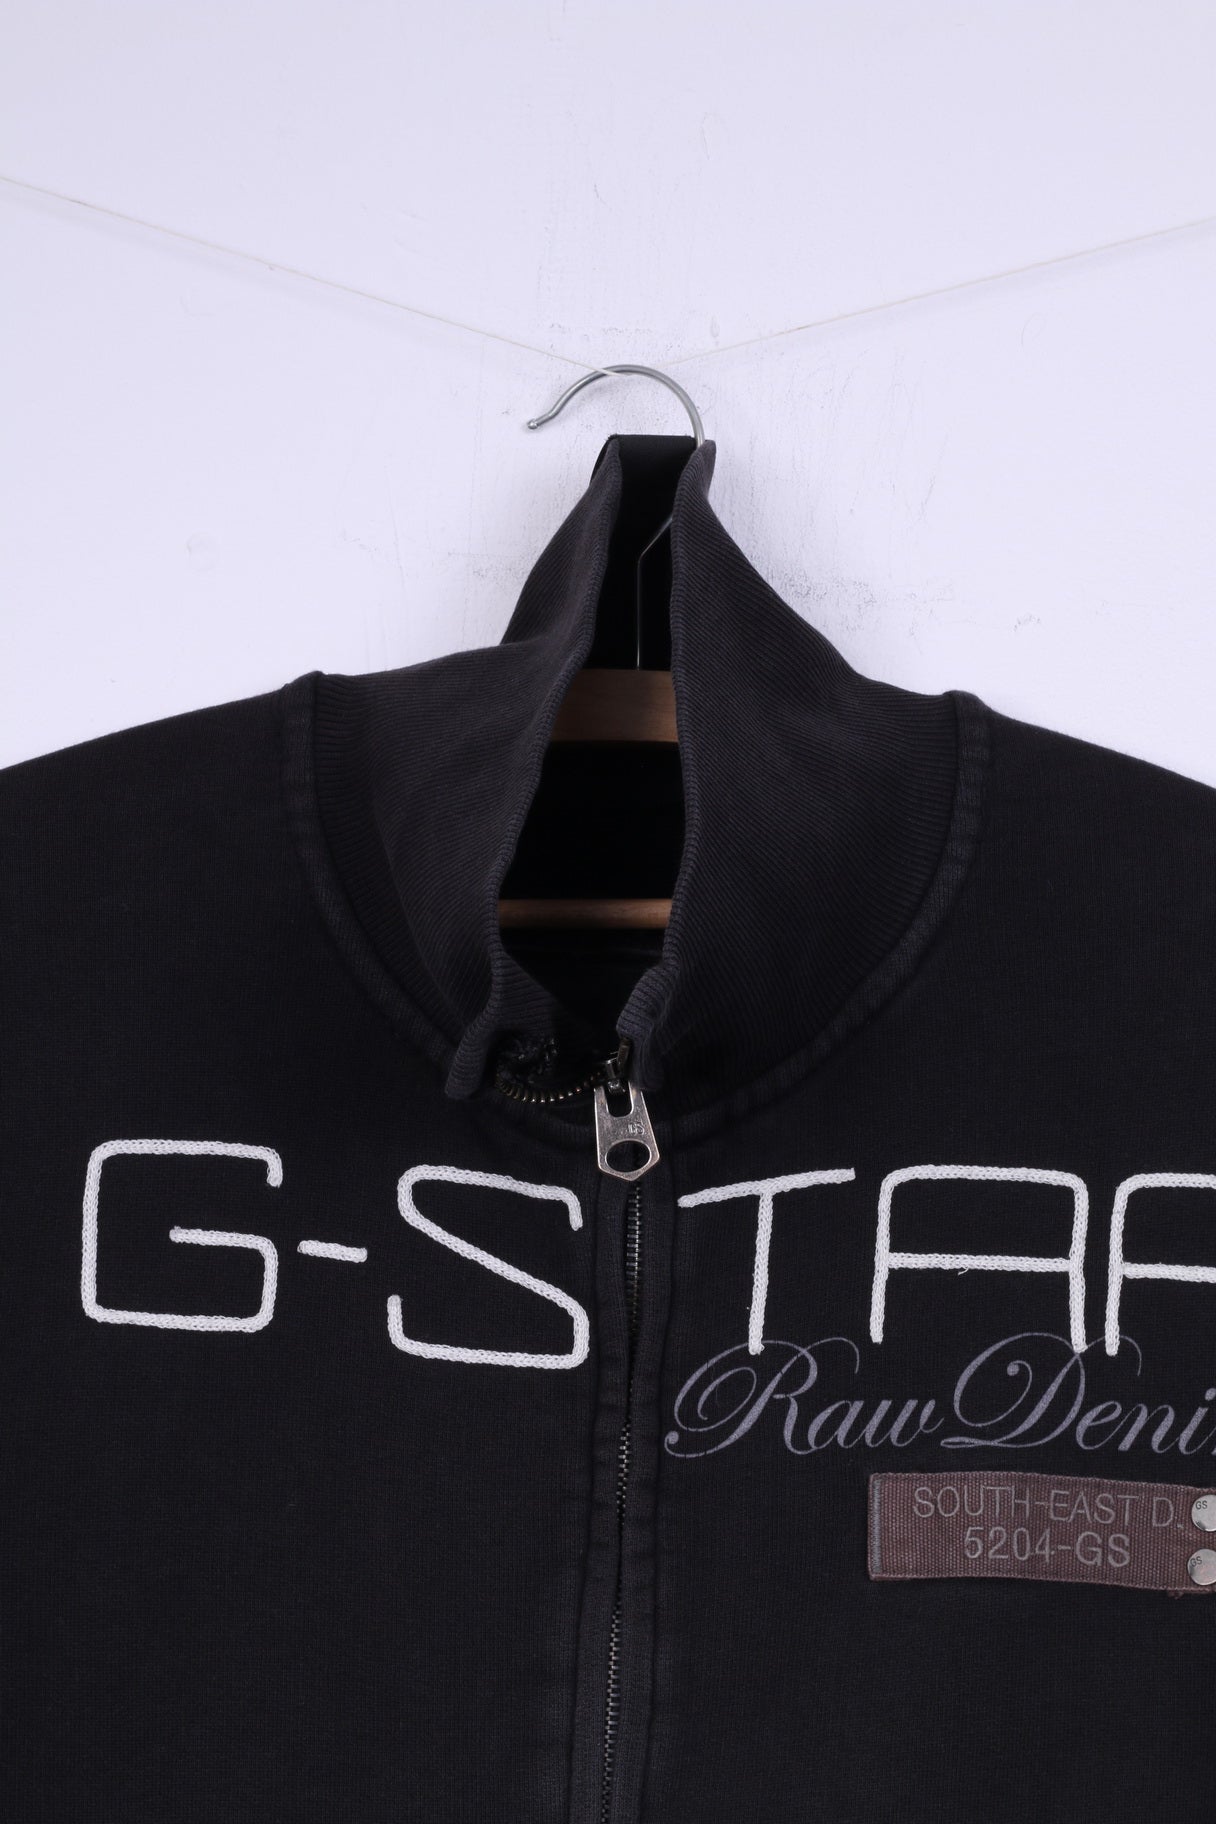 G-Star Raw Denim Mens L Sweatshirt Black Full Zipper Cotton Black Big Logo Top Jumper